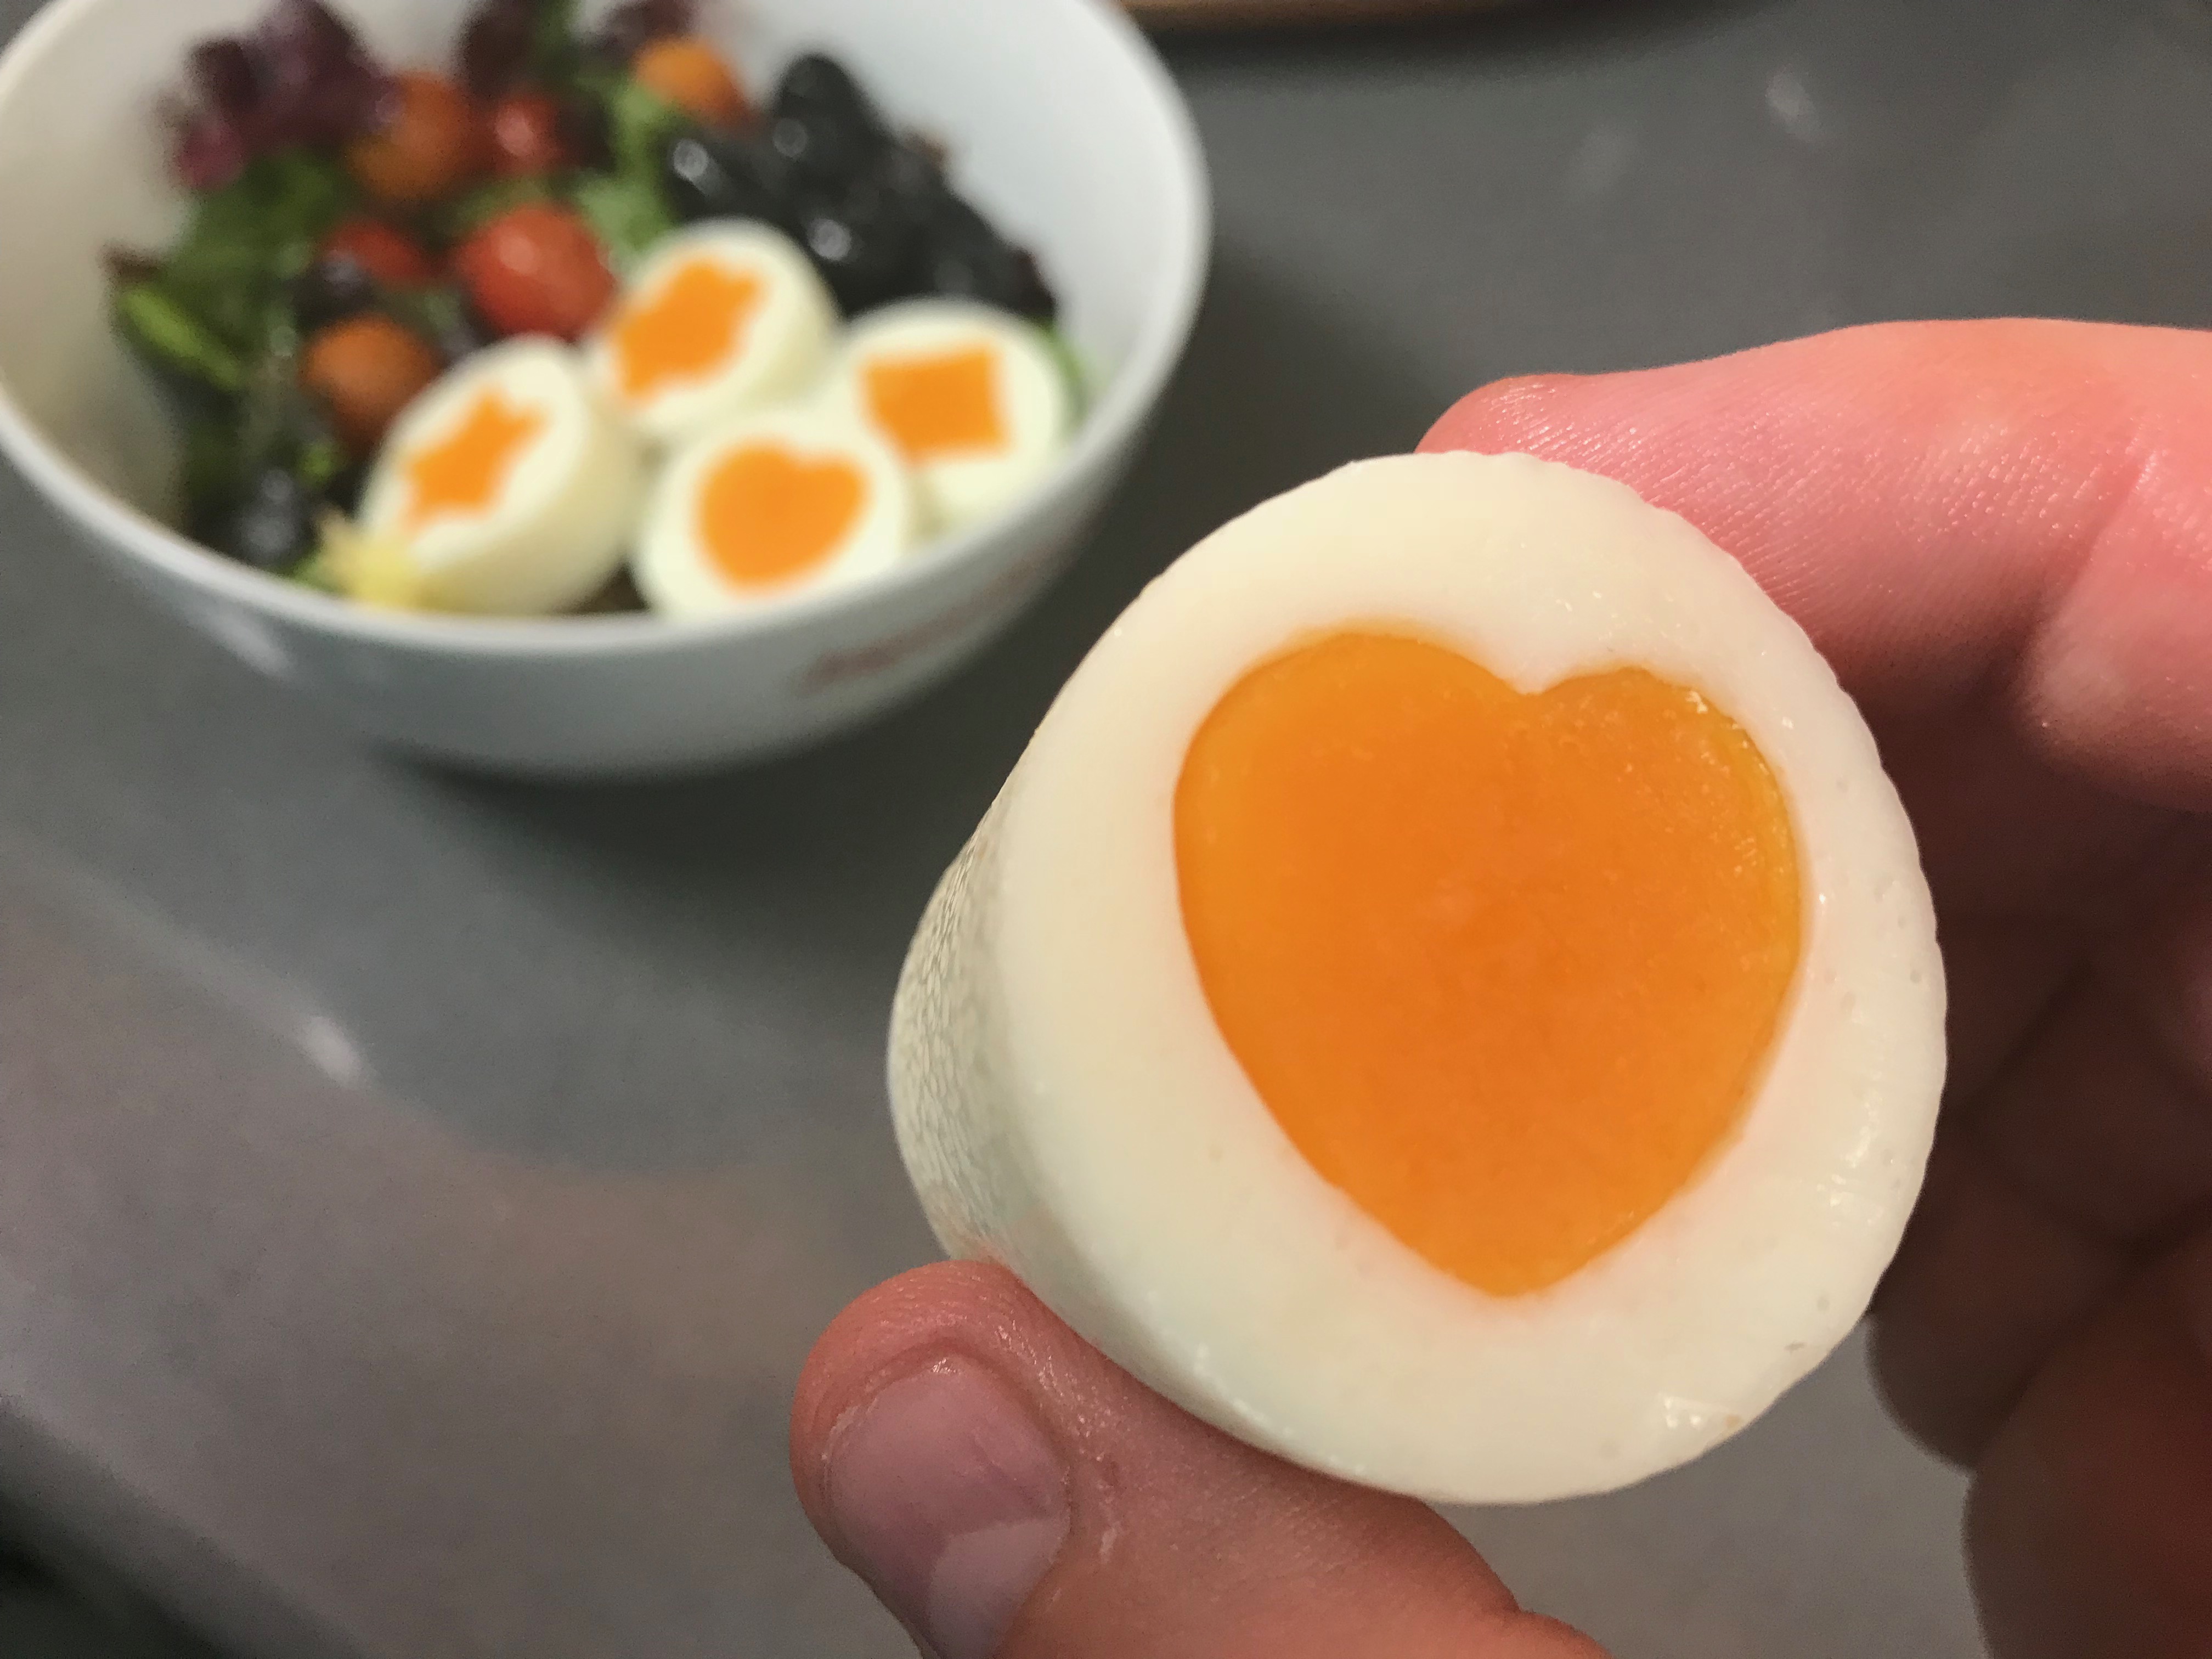 Huevo kawaii con forma de corazón